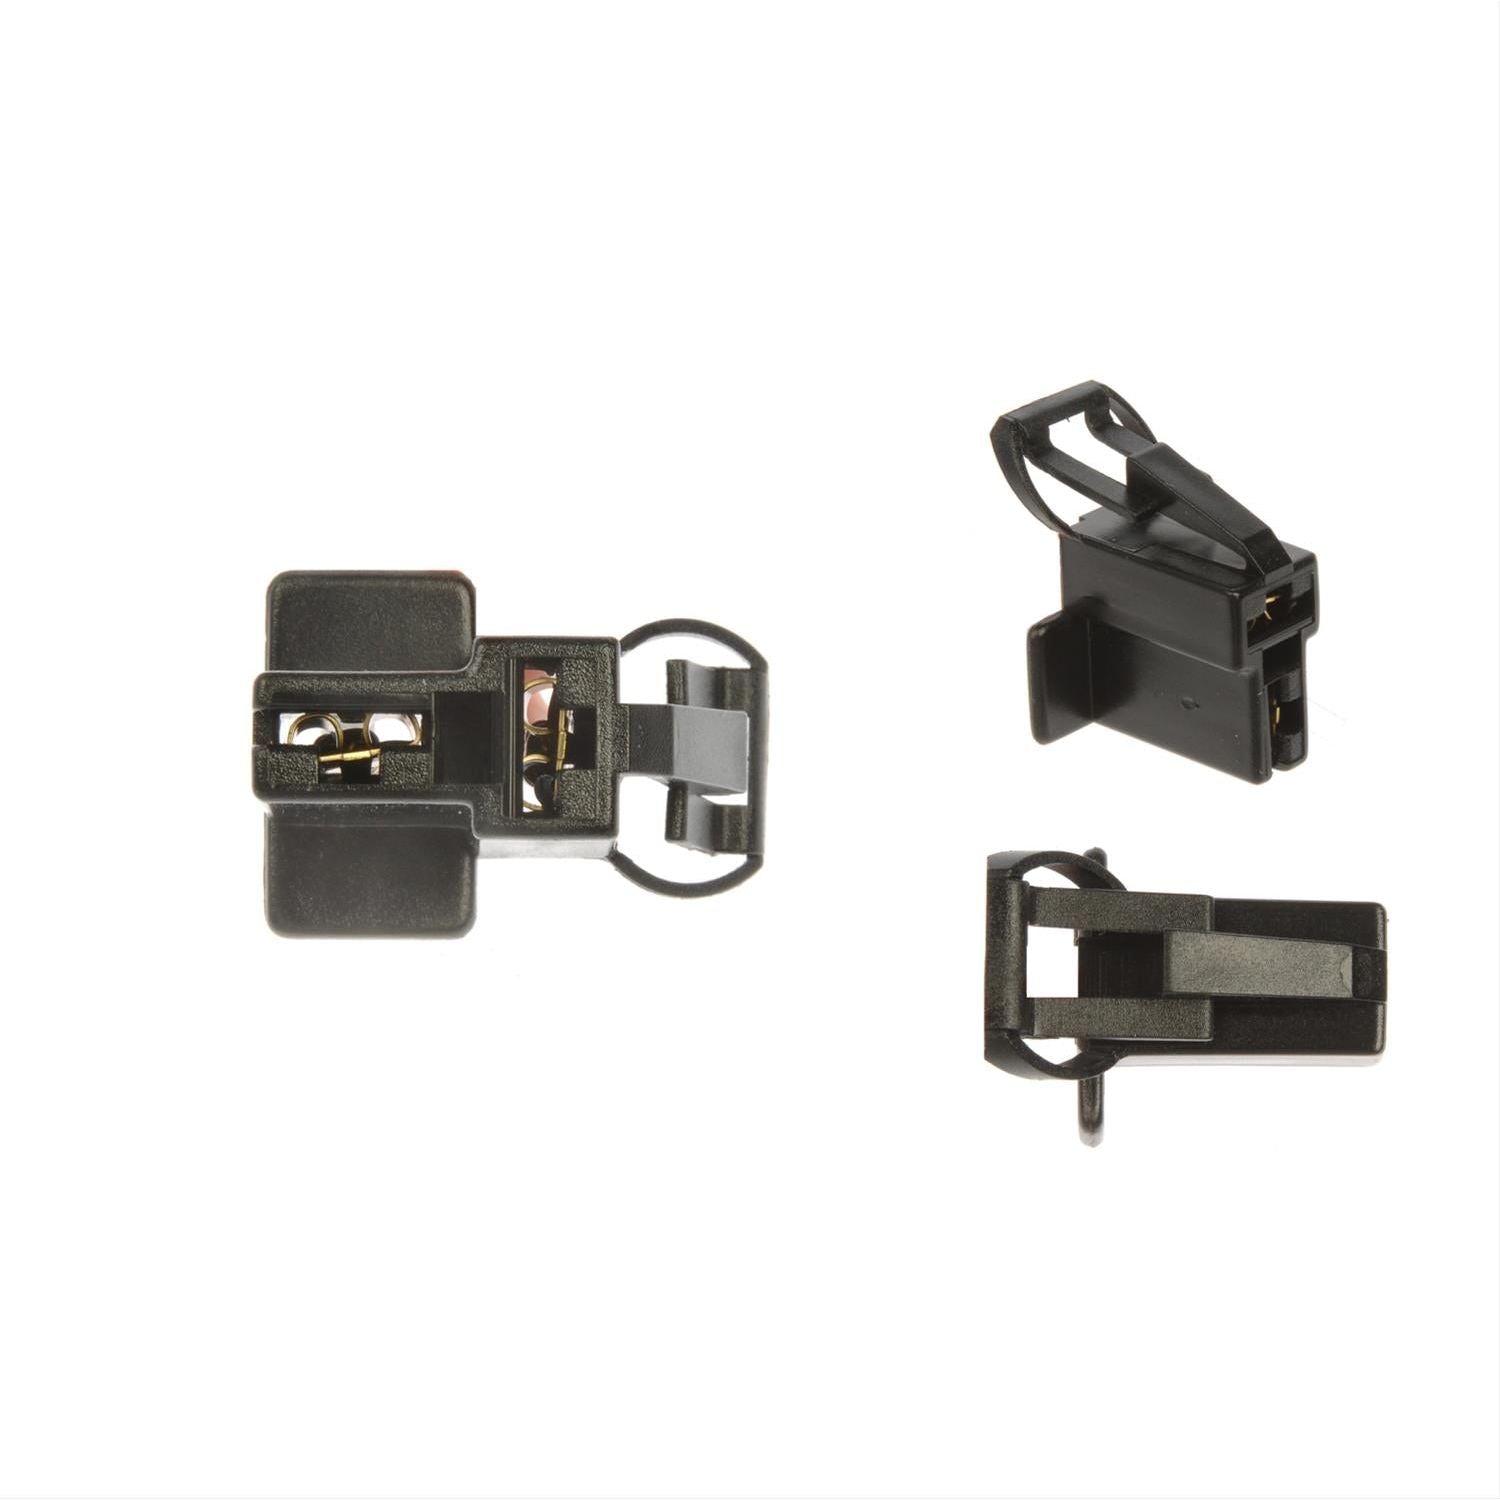 Dorman - Conduct-Tite Square 2 Wire Alternator Electrical Harness 85125